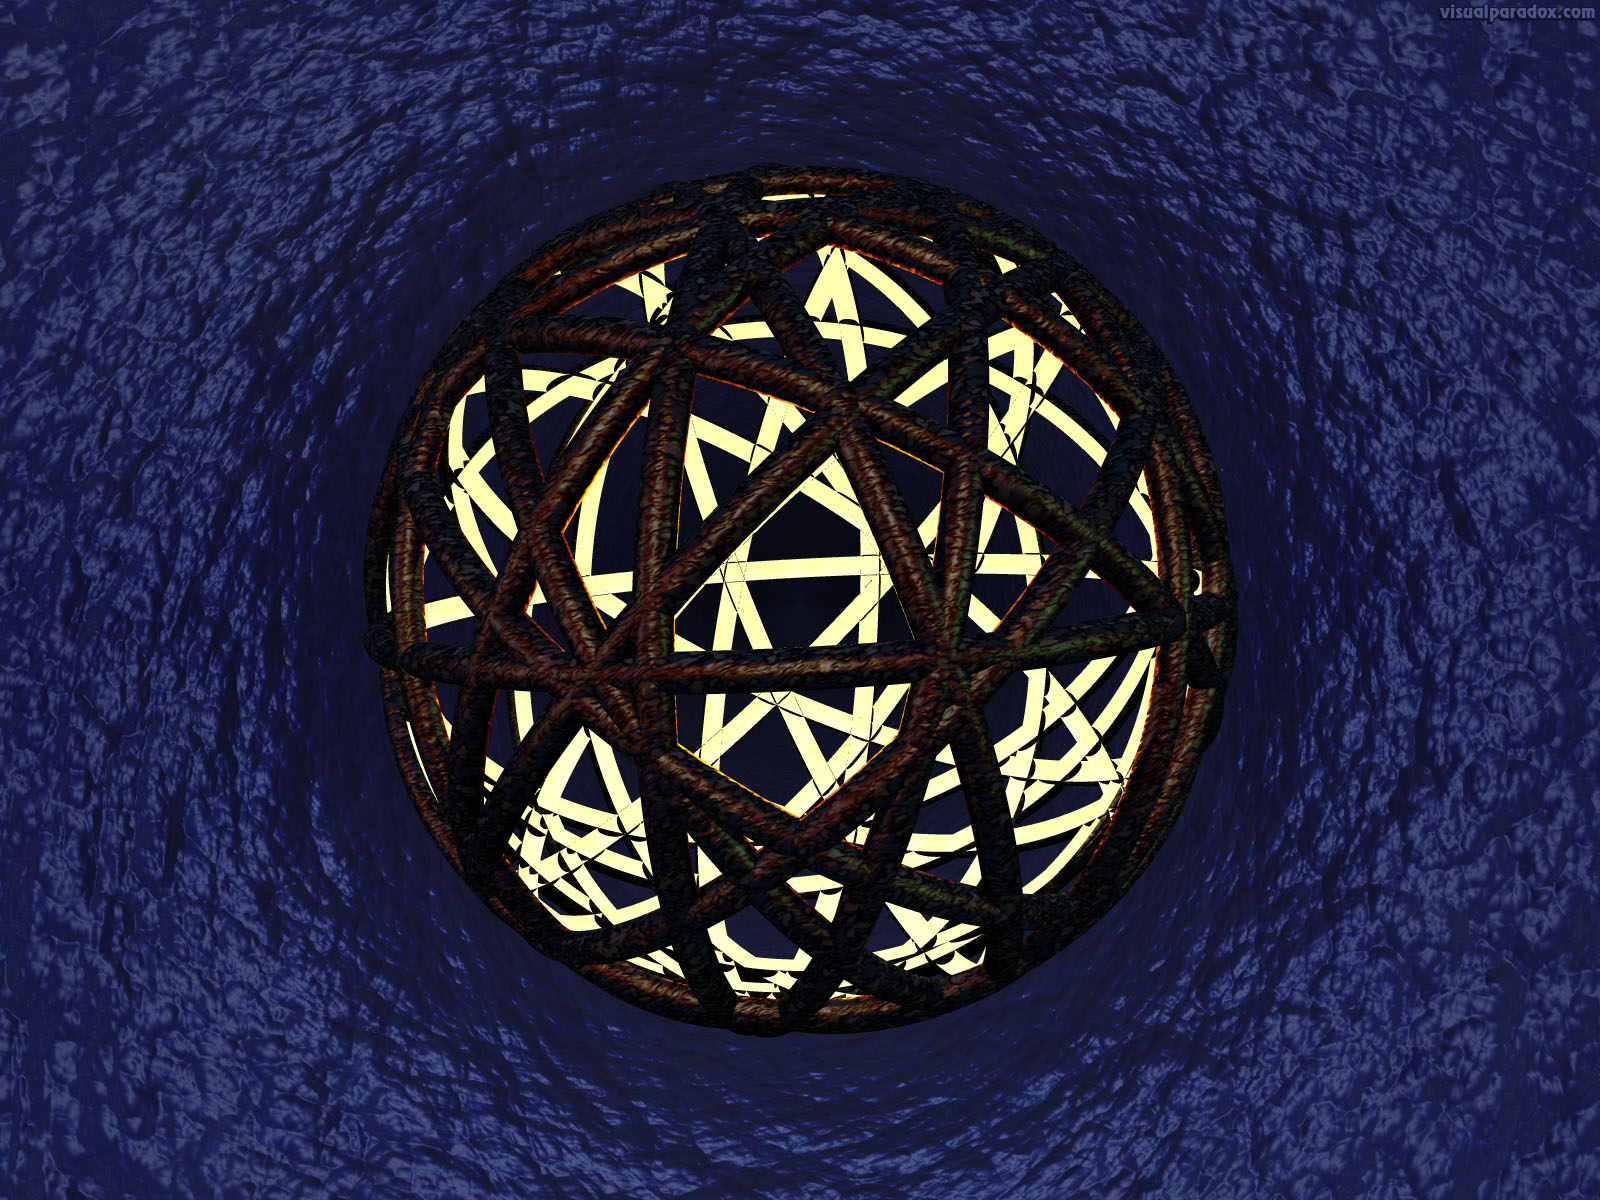 sphere, ball, vortex, whirlpool, waves, wrap, light, 3d, wallpaper